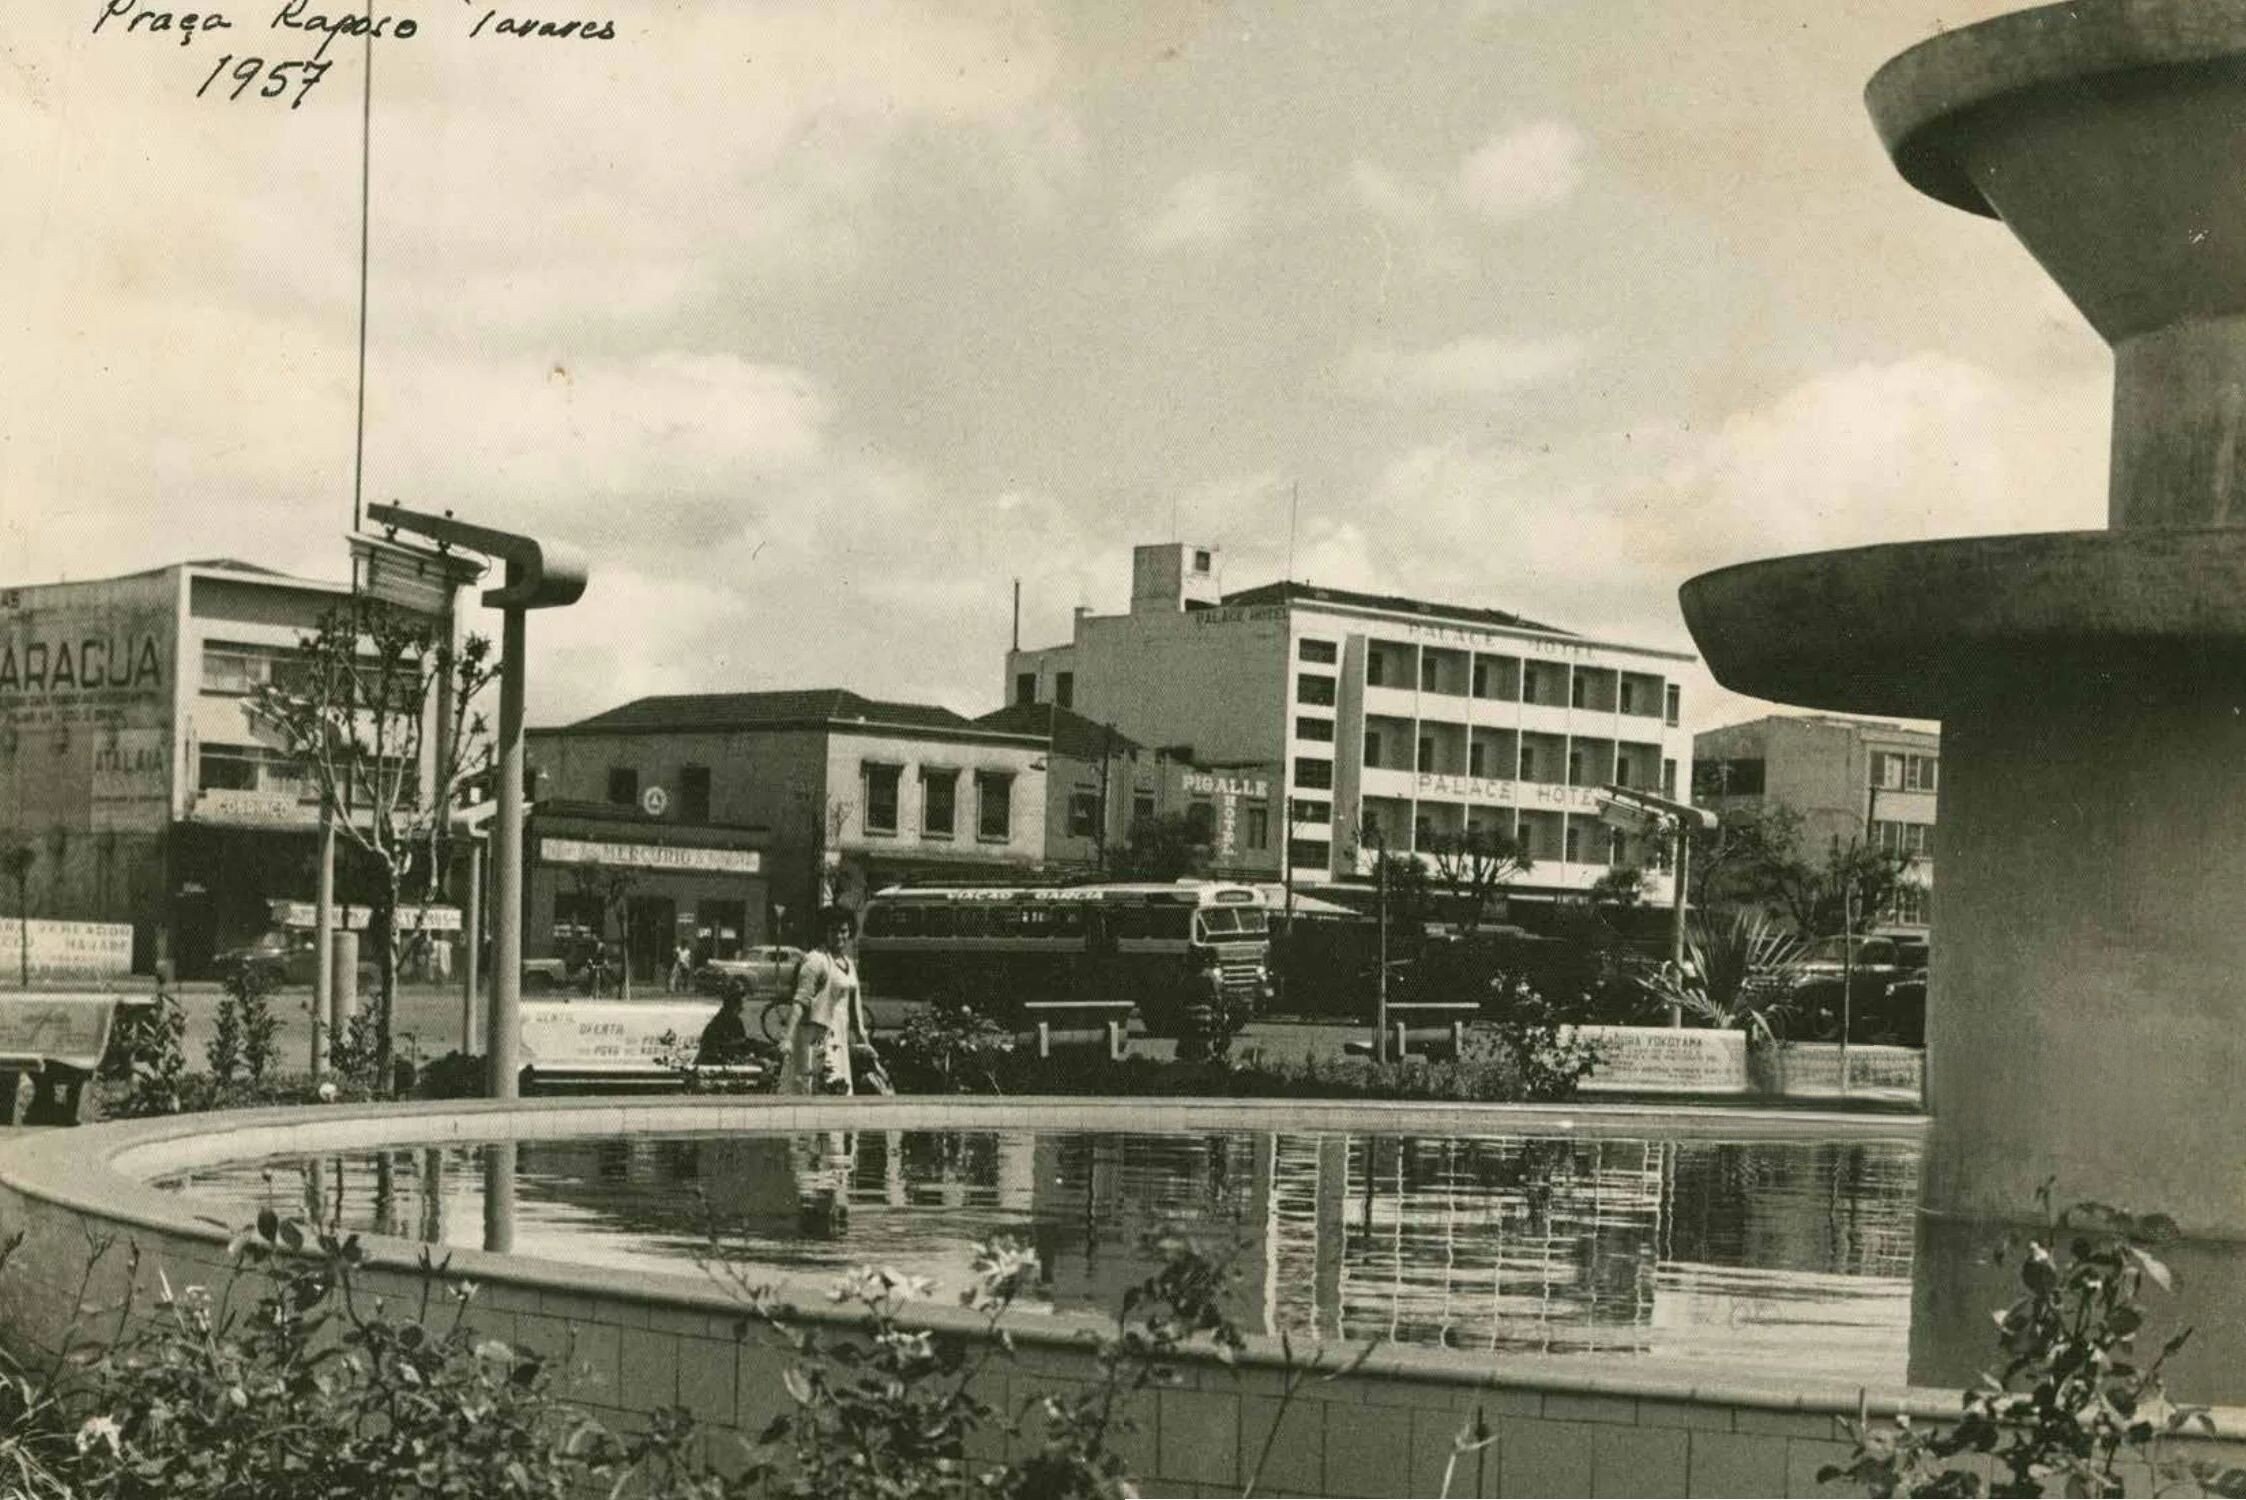 Praça Raposo Tavares - 1957